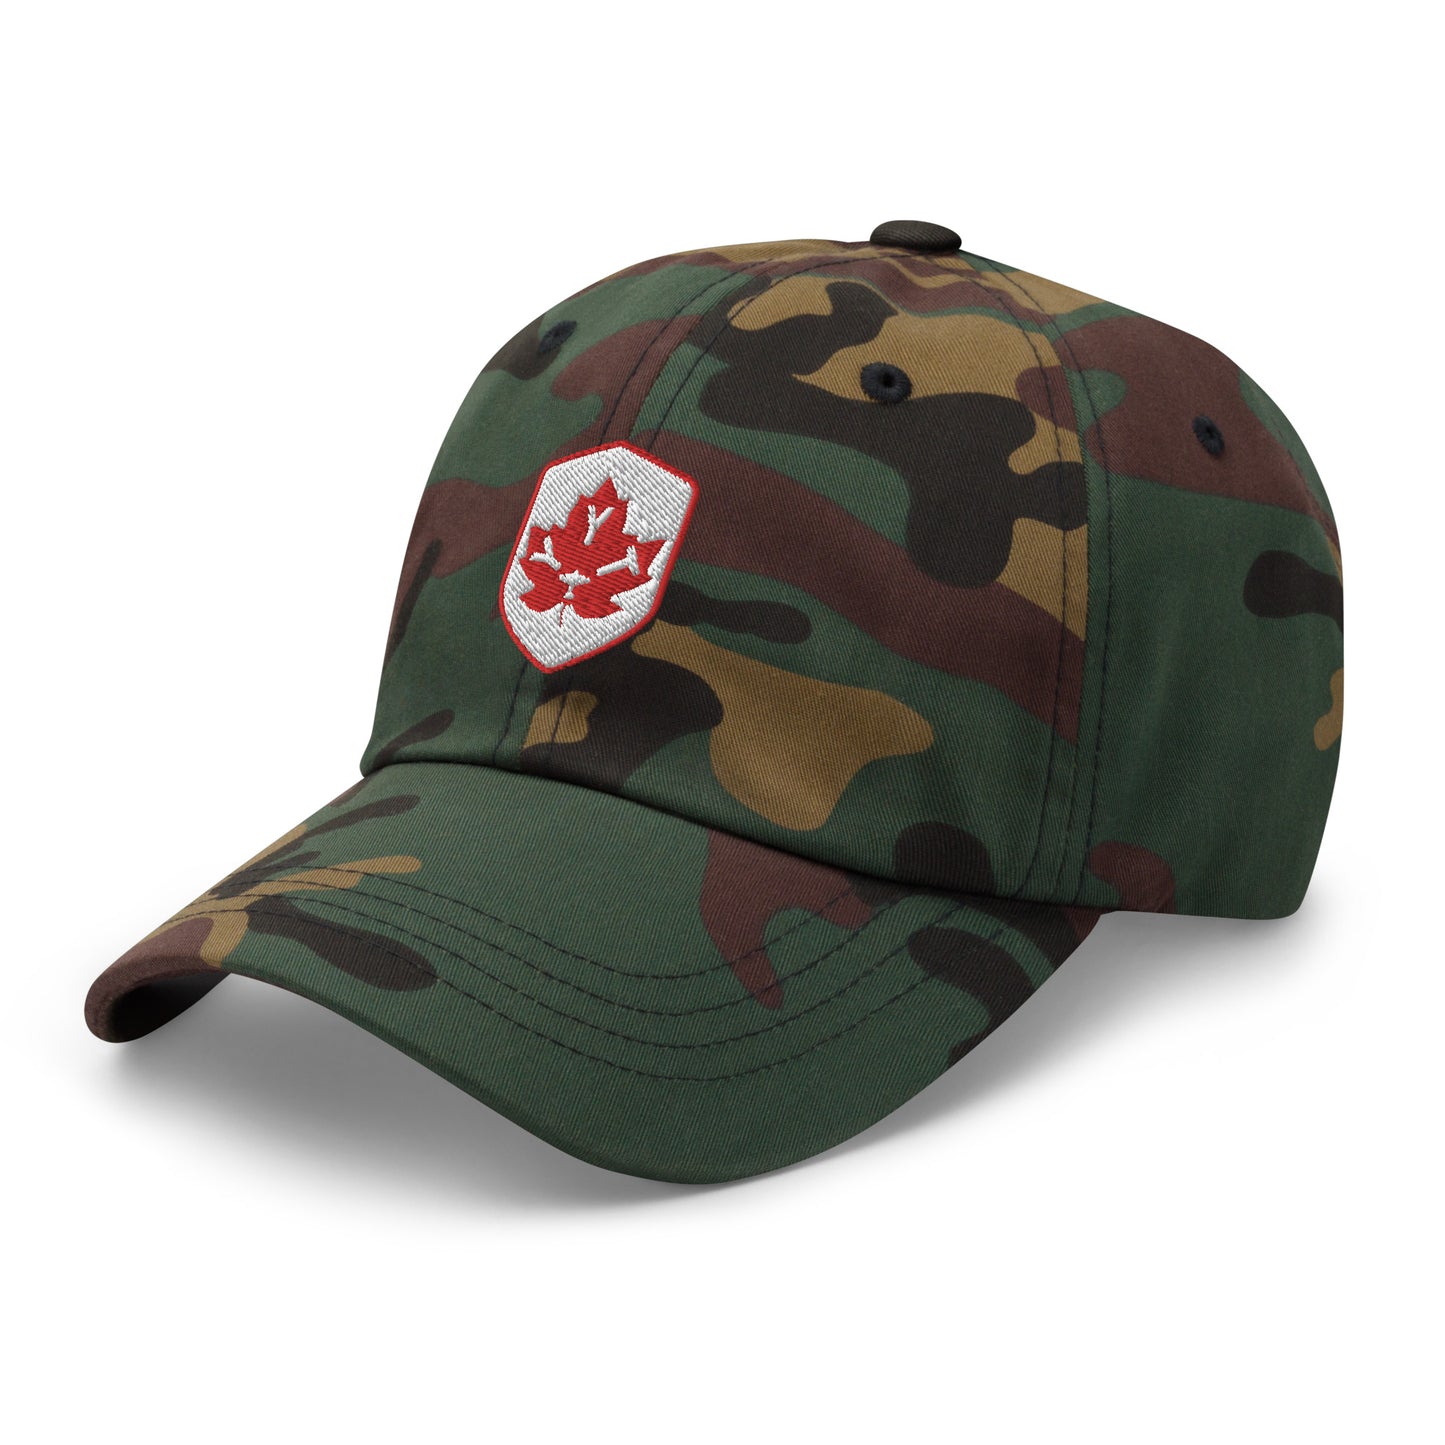 Maple Leaf Baseball Cap - Red/White • YYT St. John's • YHM Designs - Image 20